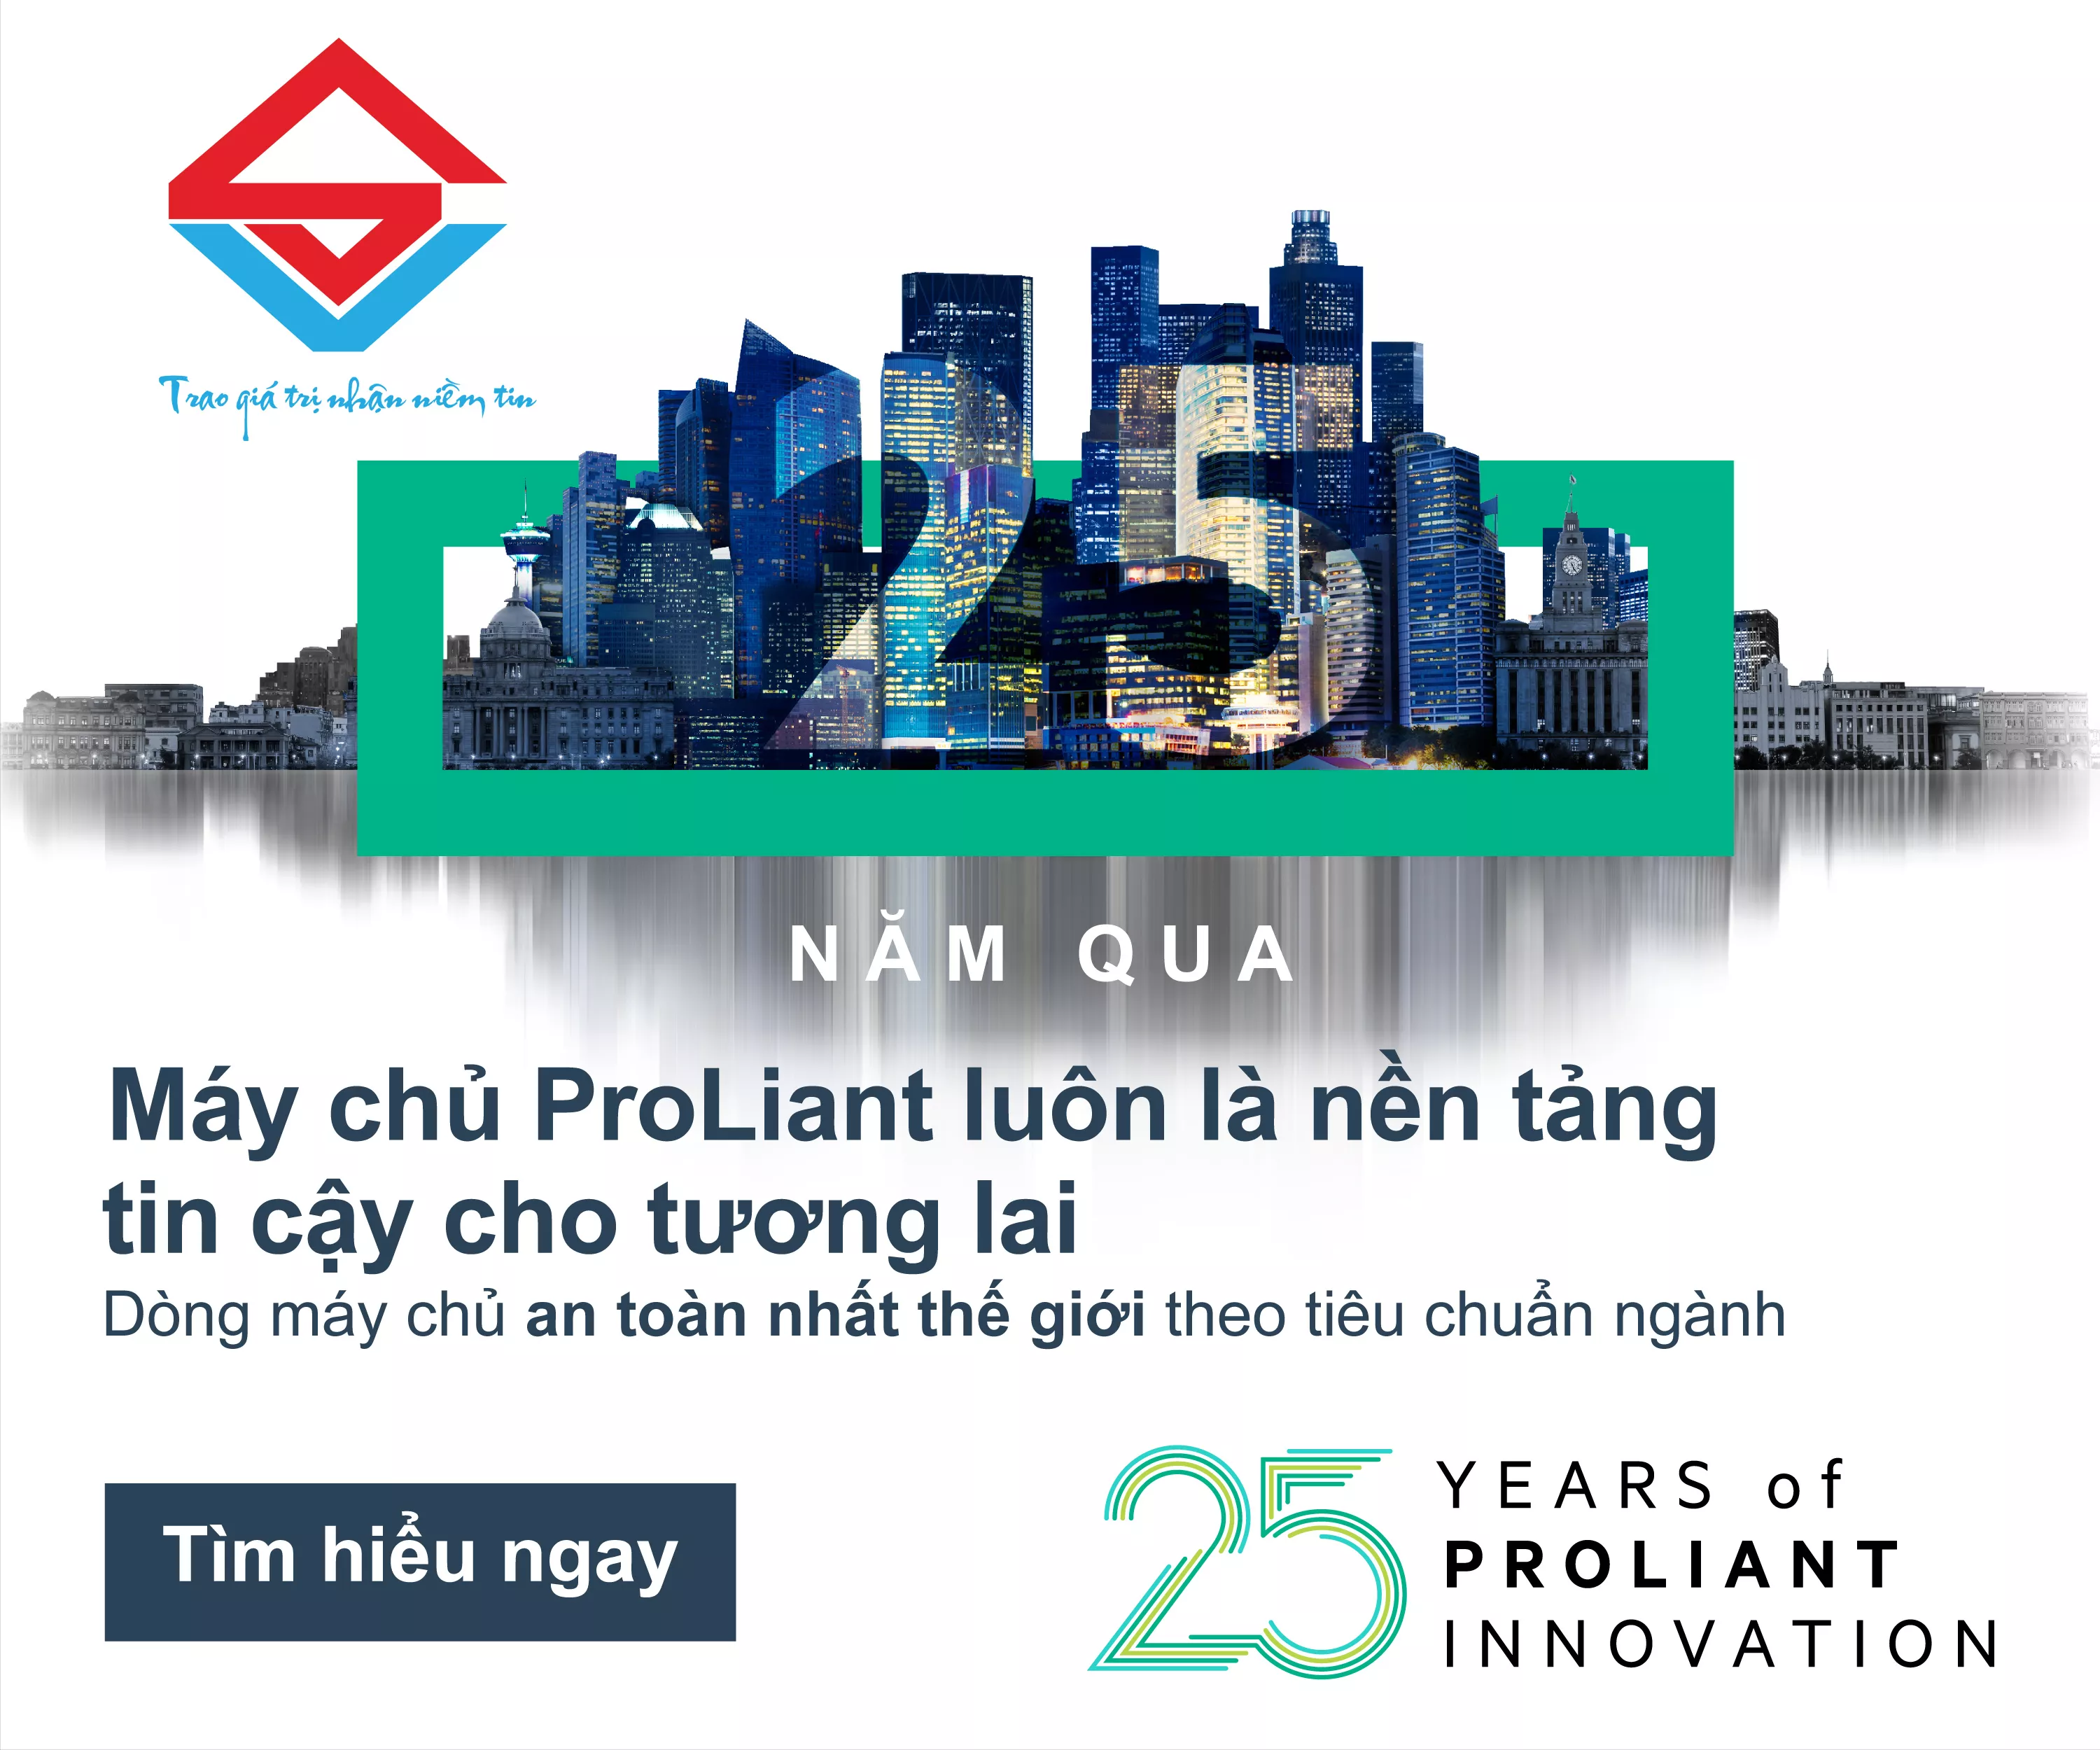 25 Năm Máy chủ ProLiant luôn là nền tảng tin cậy cho tương lai